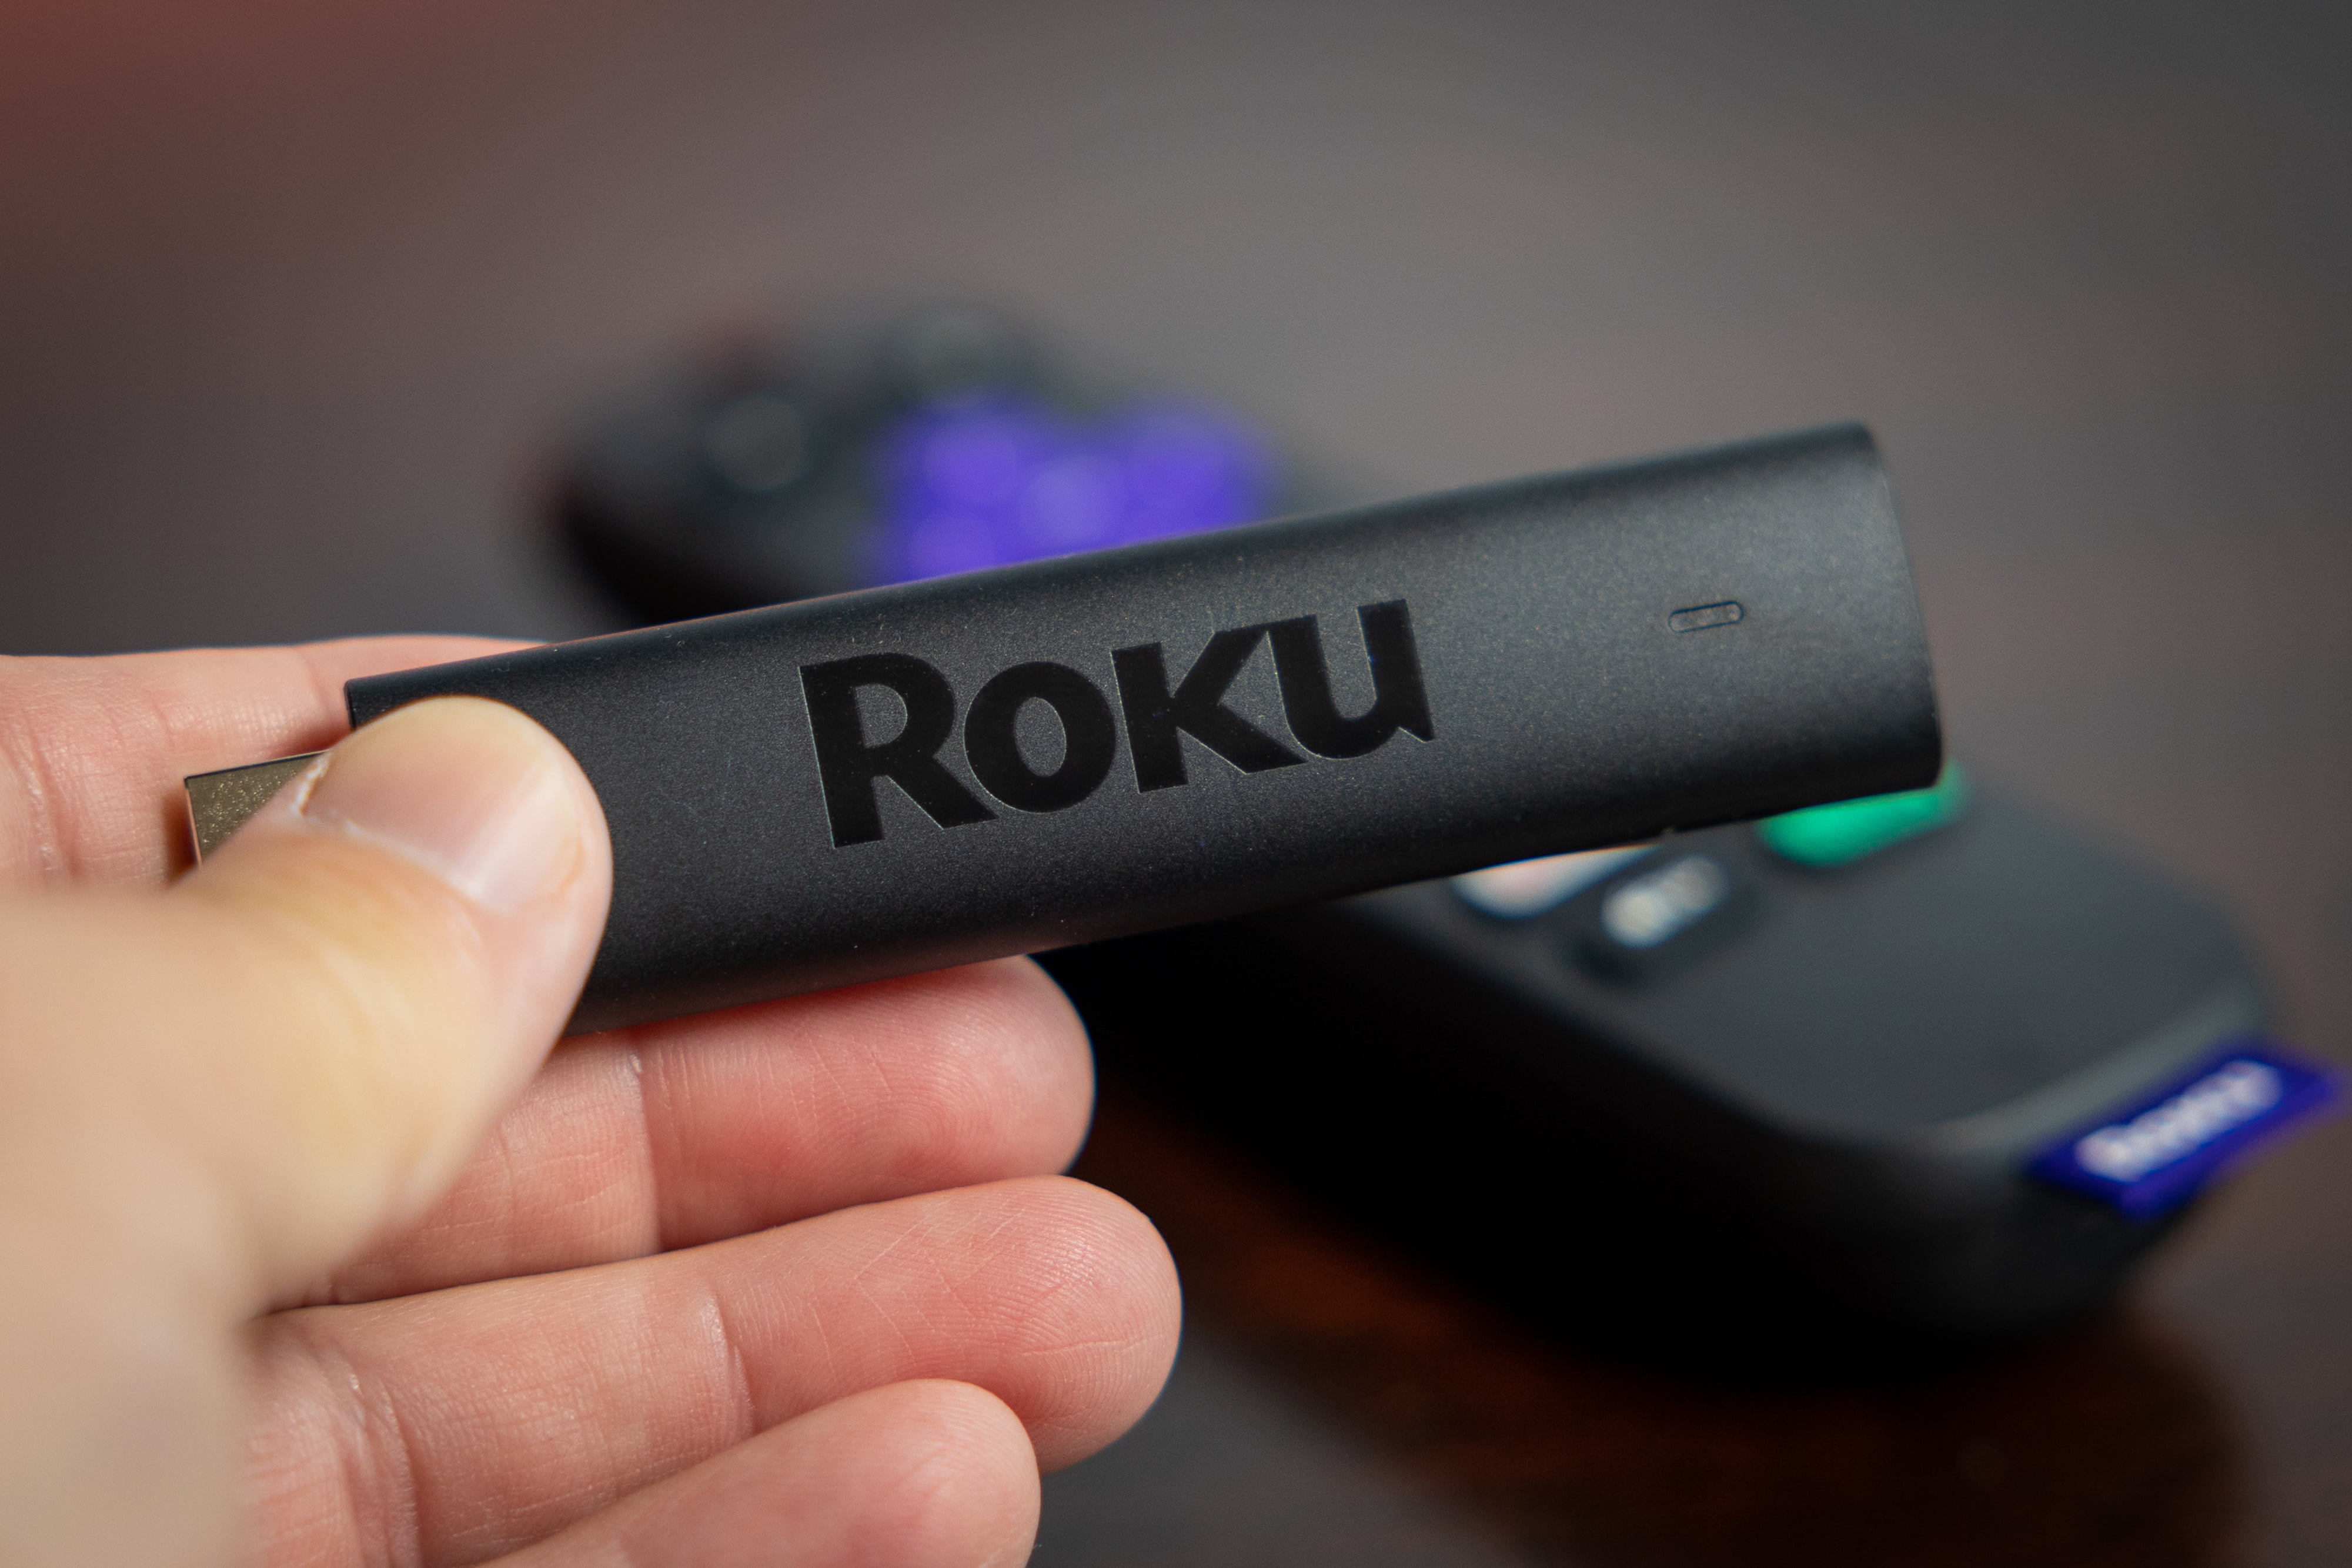 Roku Streaming Stick 4K 2021: Cómo funciona (Review en español) 